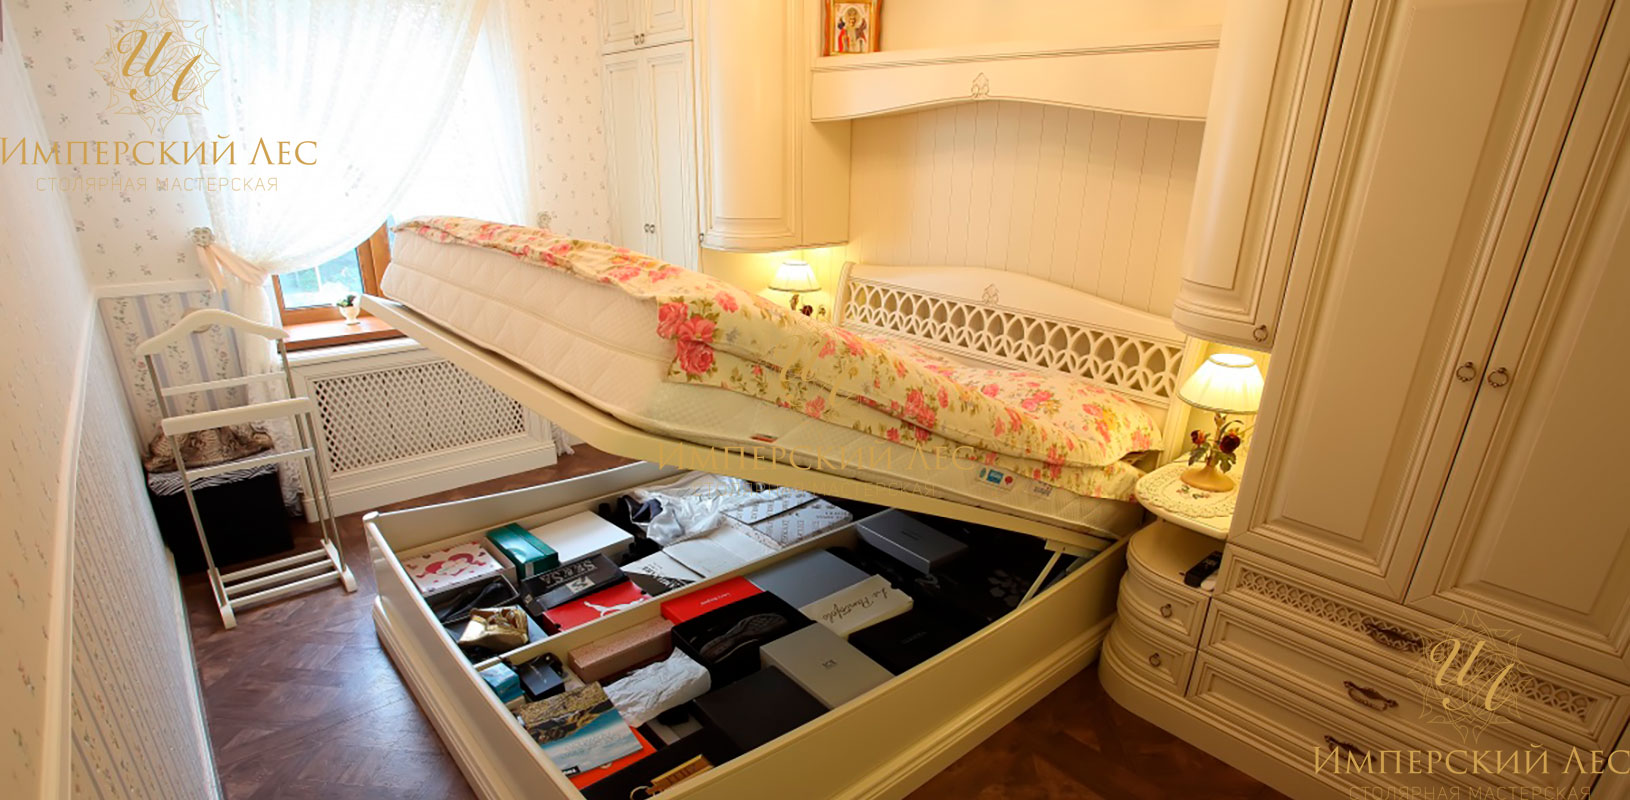 Кровать со спальным гарнитуром белого цвета